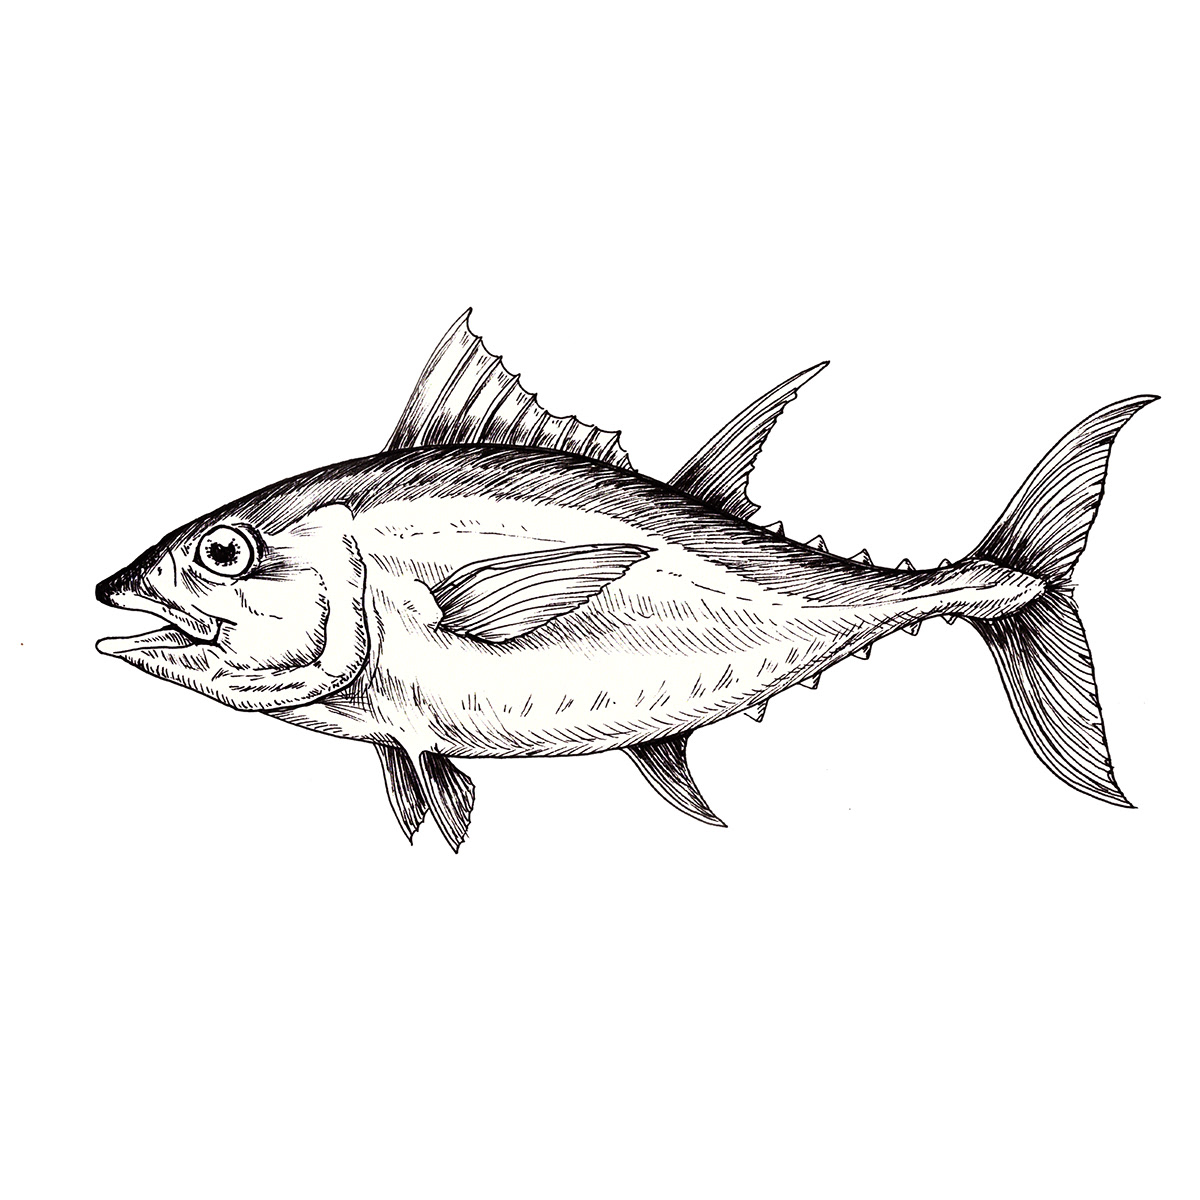 sangara científica ilustracion mar camaron langosta ostra pescado atun pez